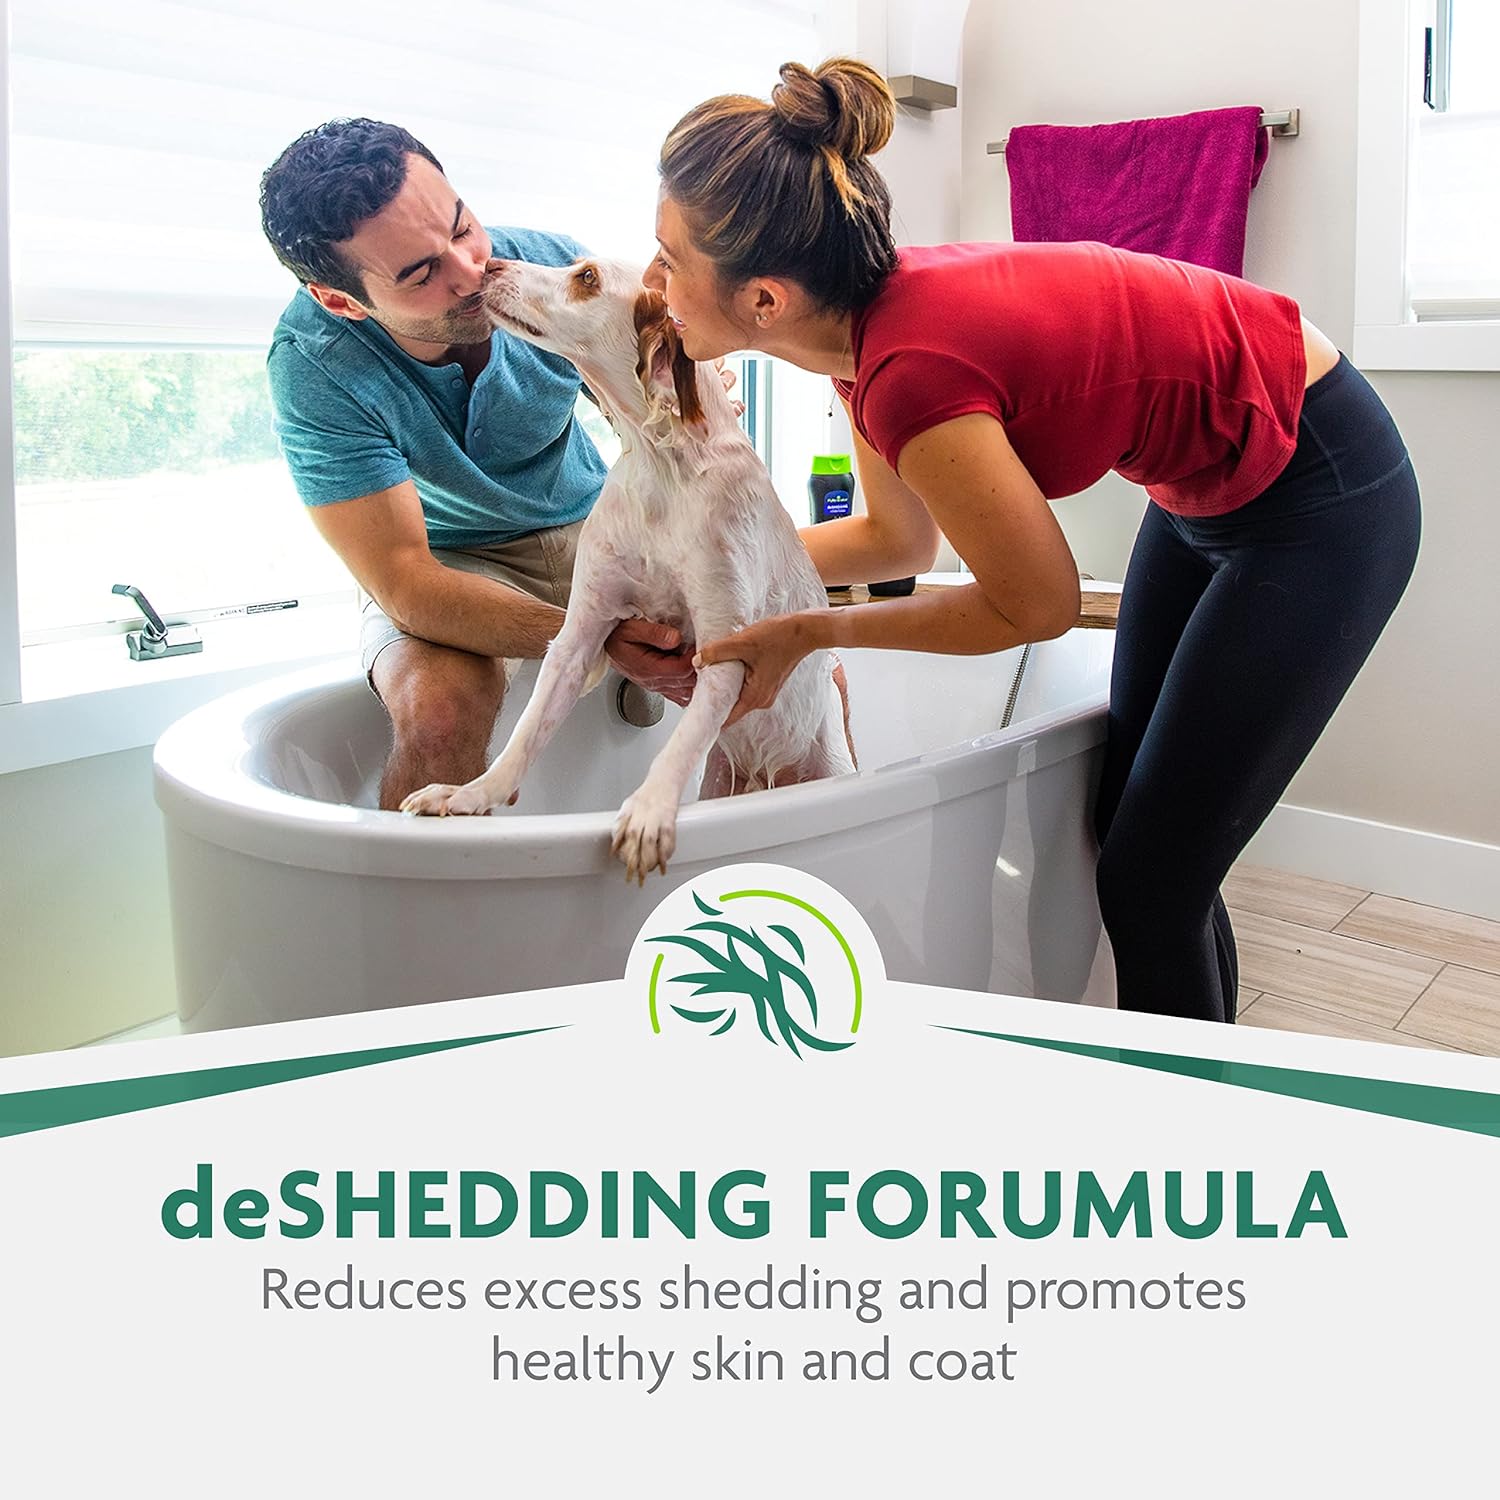 FURminator deShedding Ultra Premium Shampoo with Pump, 1 Allon, Shampoo for Dogs Helps Reduce Excess Shedding